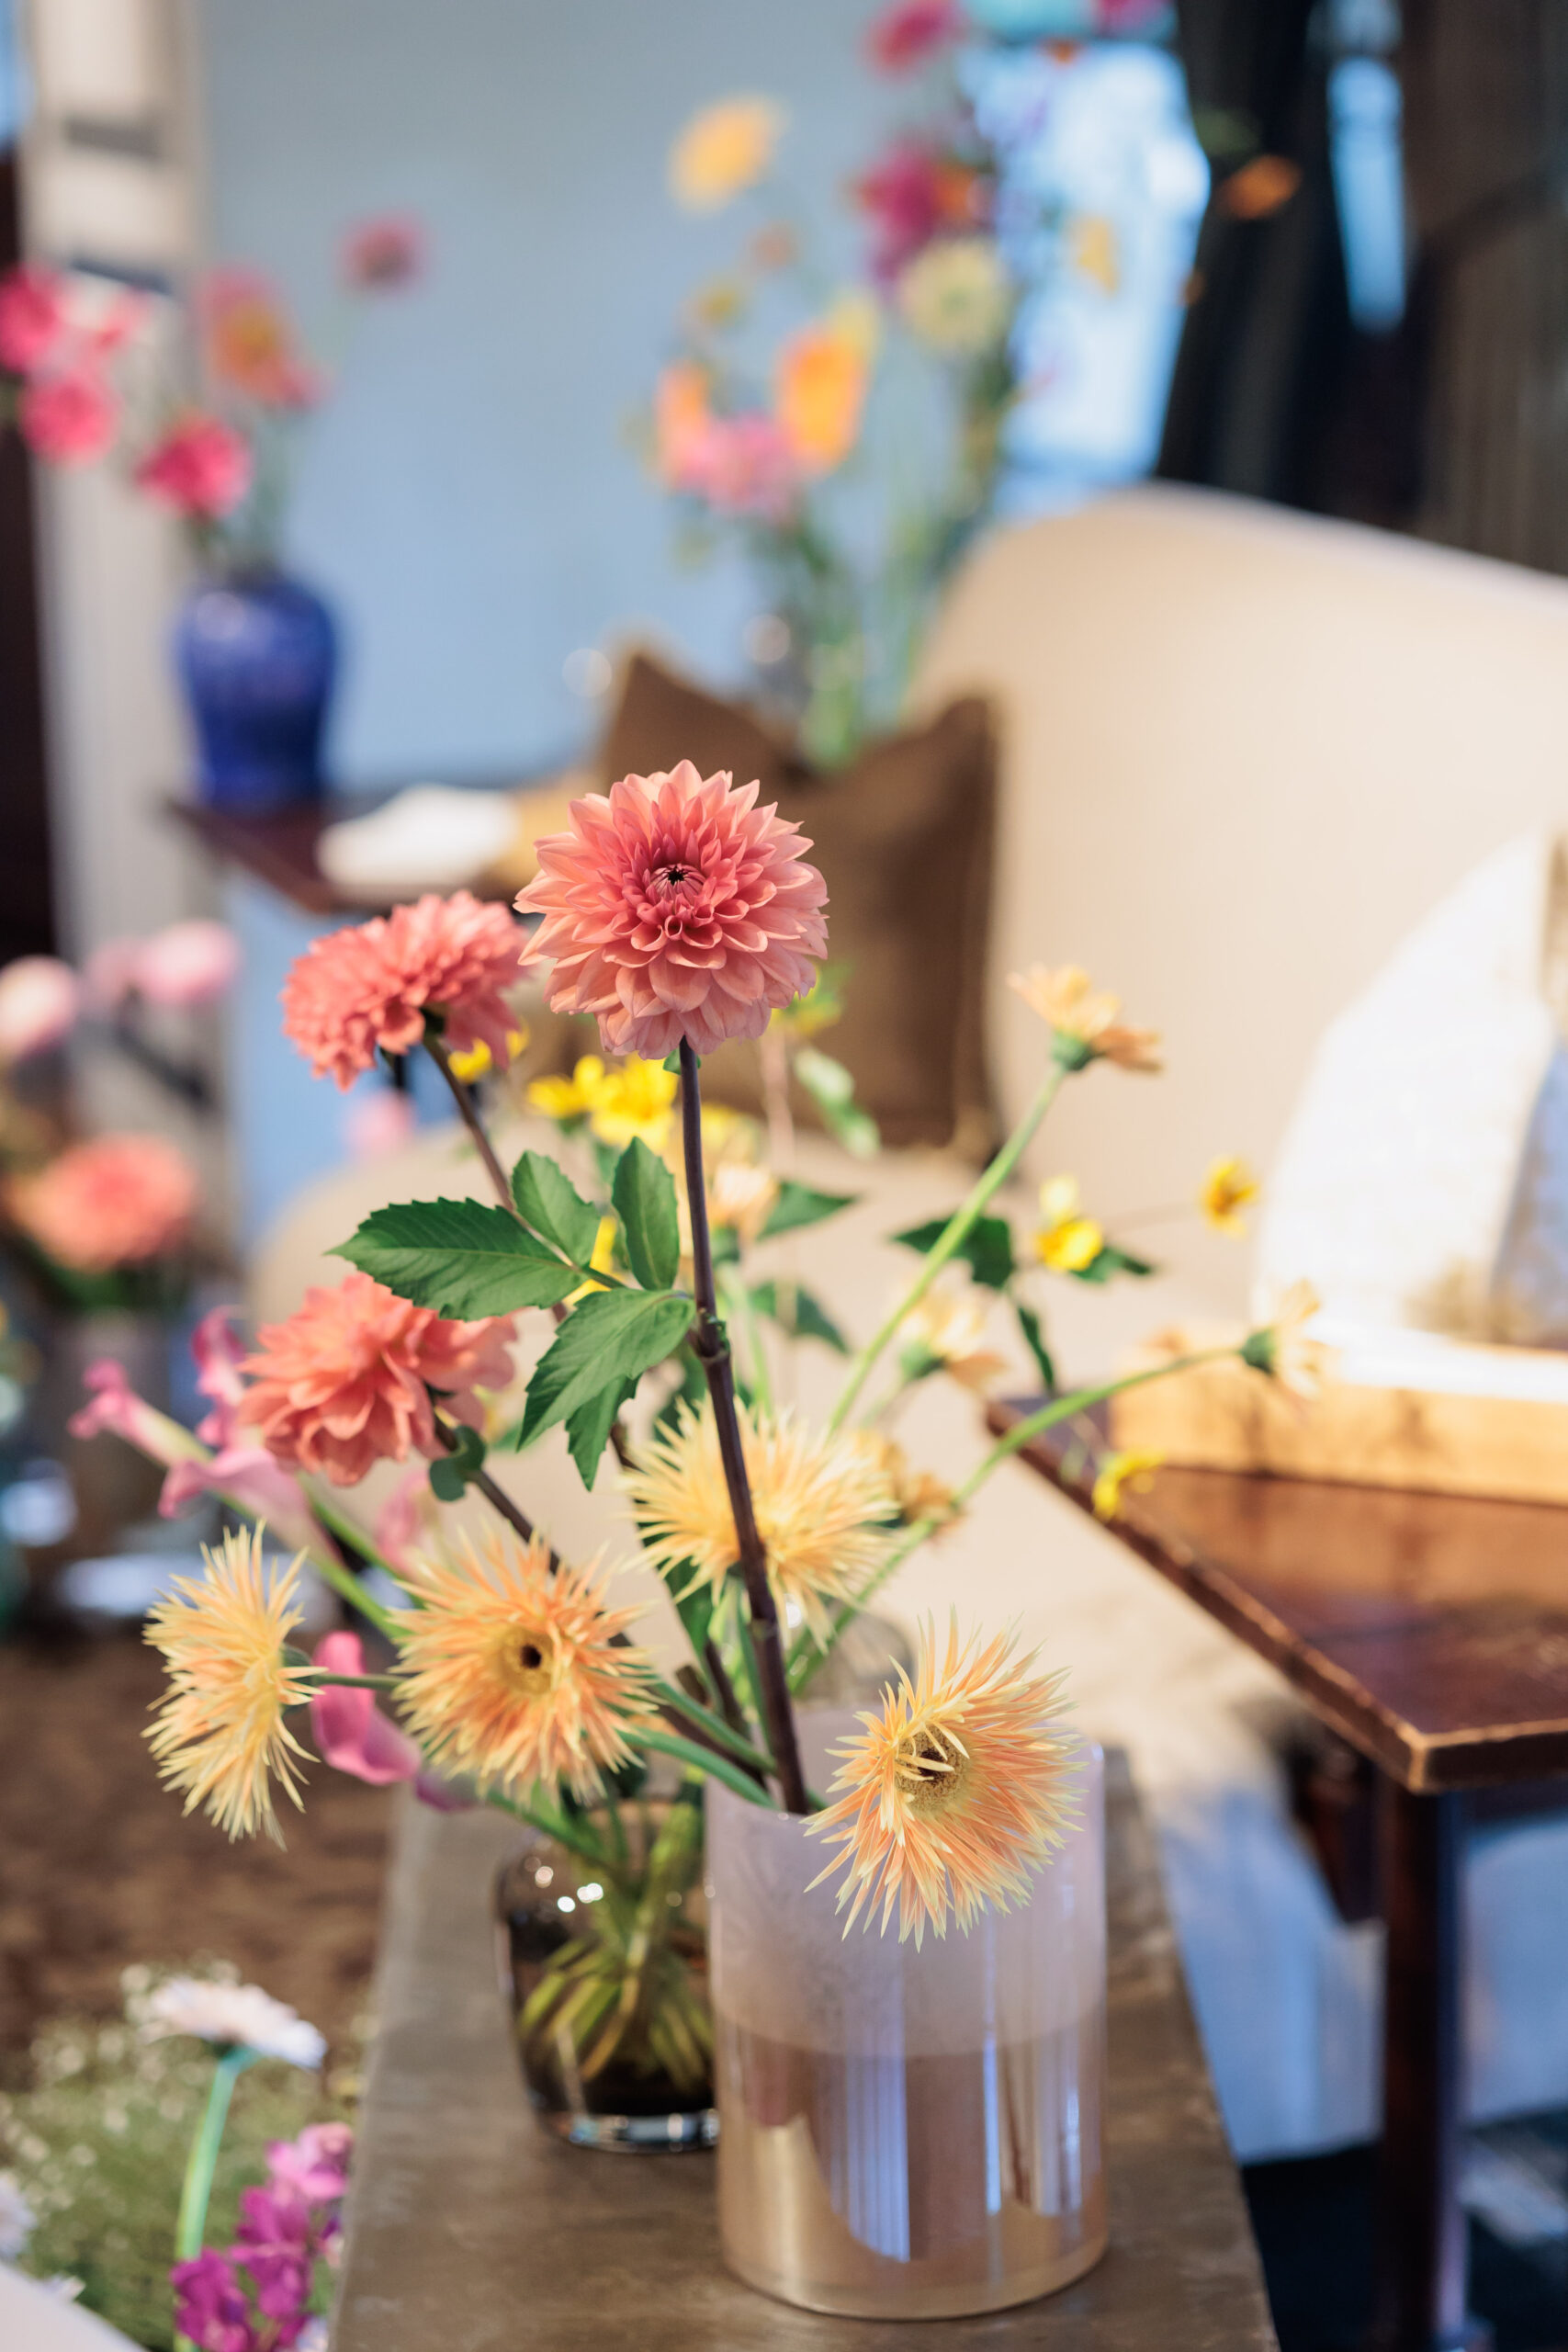 名古屋～岐阜の東海エリアでのおすすめガーデン挙式ができる結婚式会場、ザ ナンザンハウスにて結婚式をあげられたお二人のお姿をより引き立てる会場装花（フラワーコーディネート）をご紹介